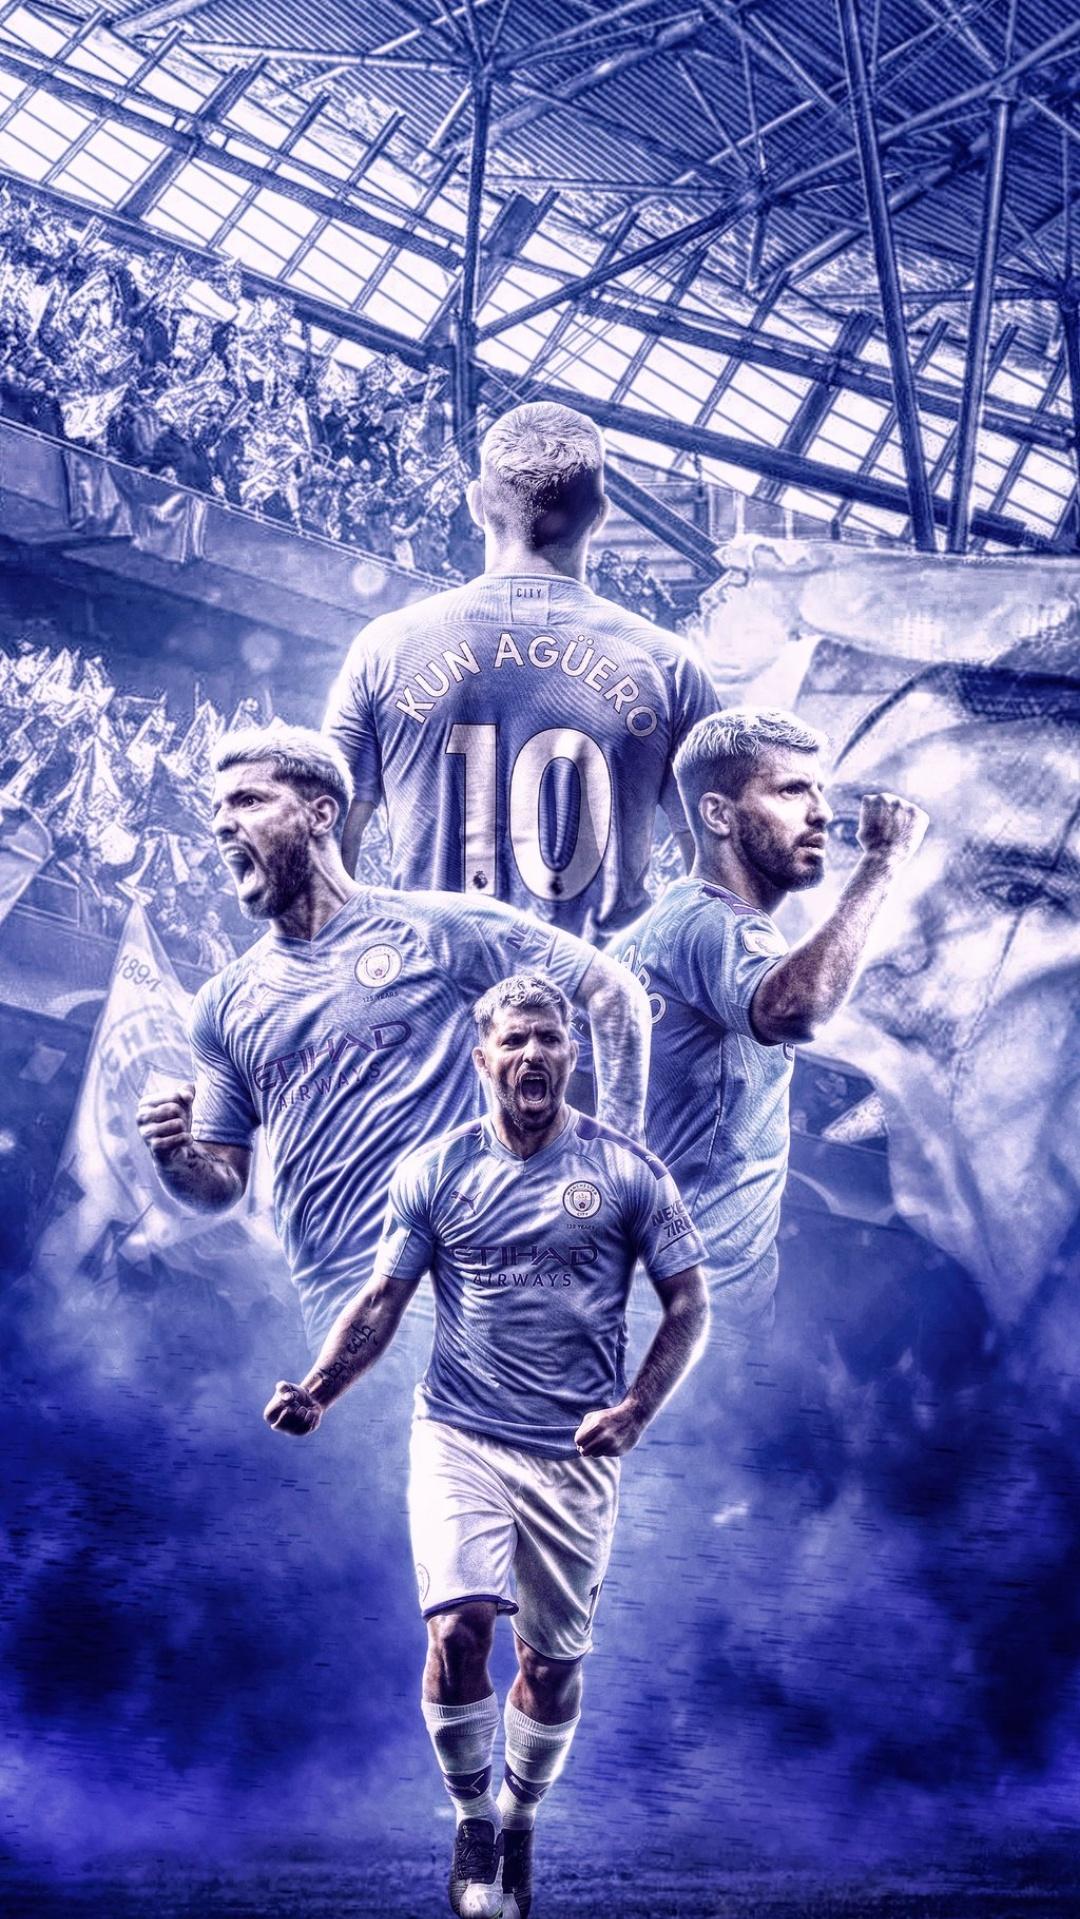 Manchester City Fc Wallpaper Top Best